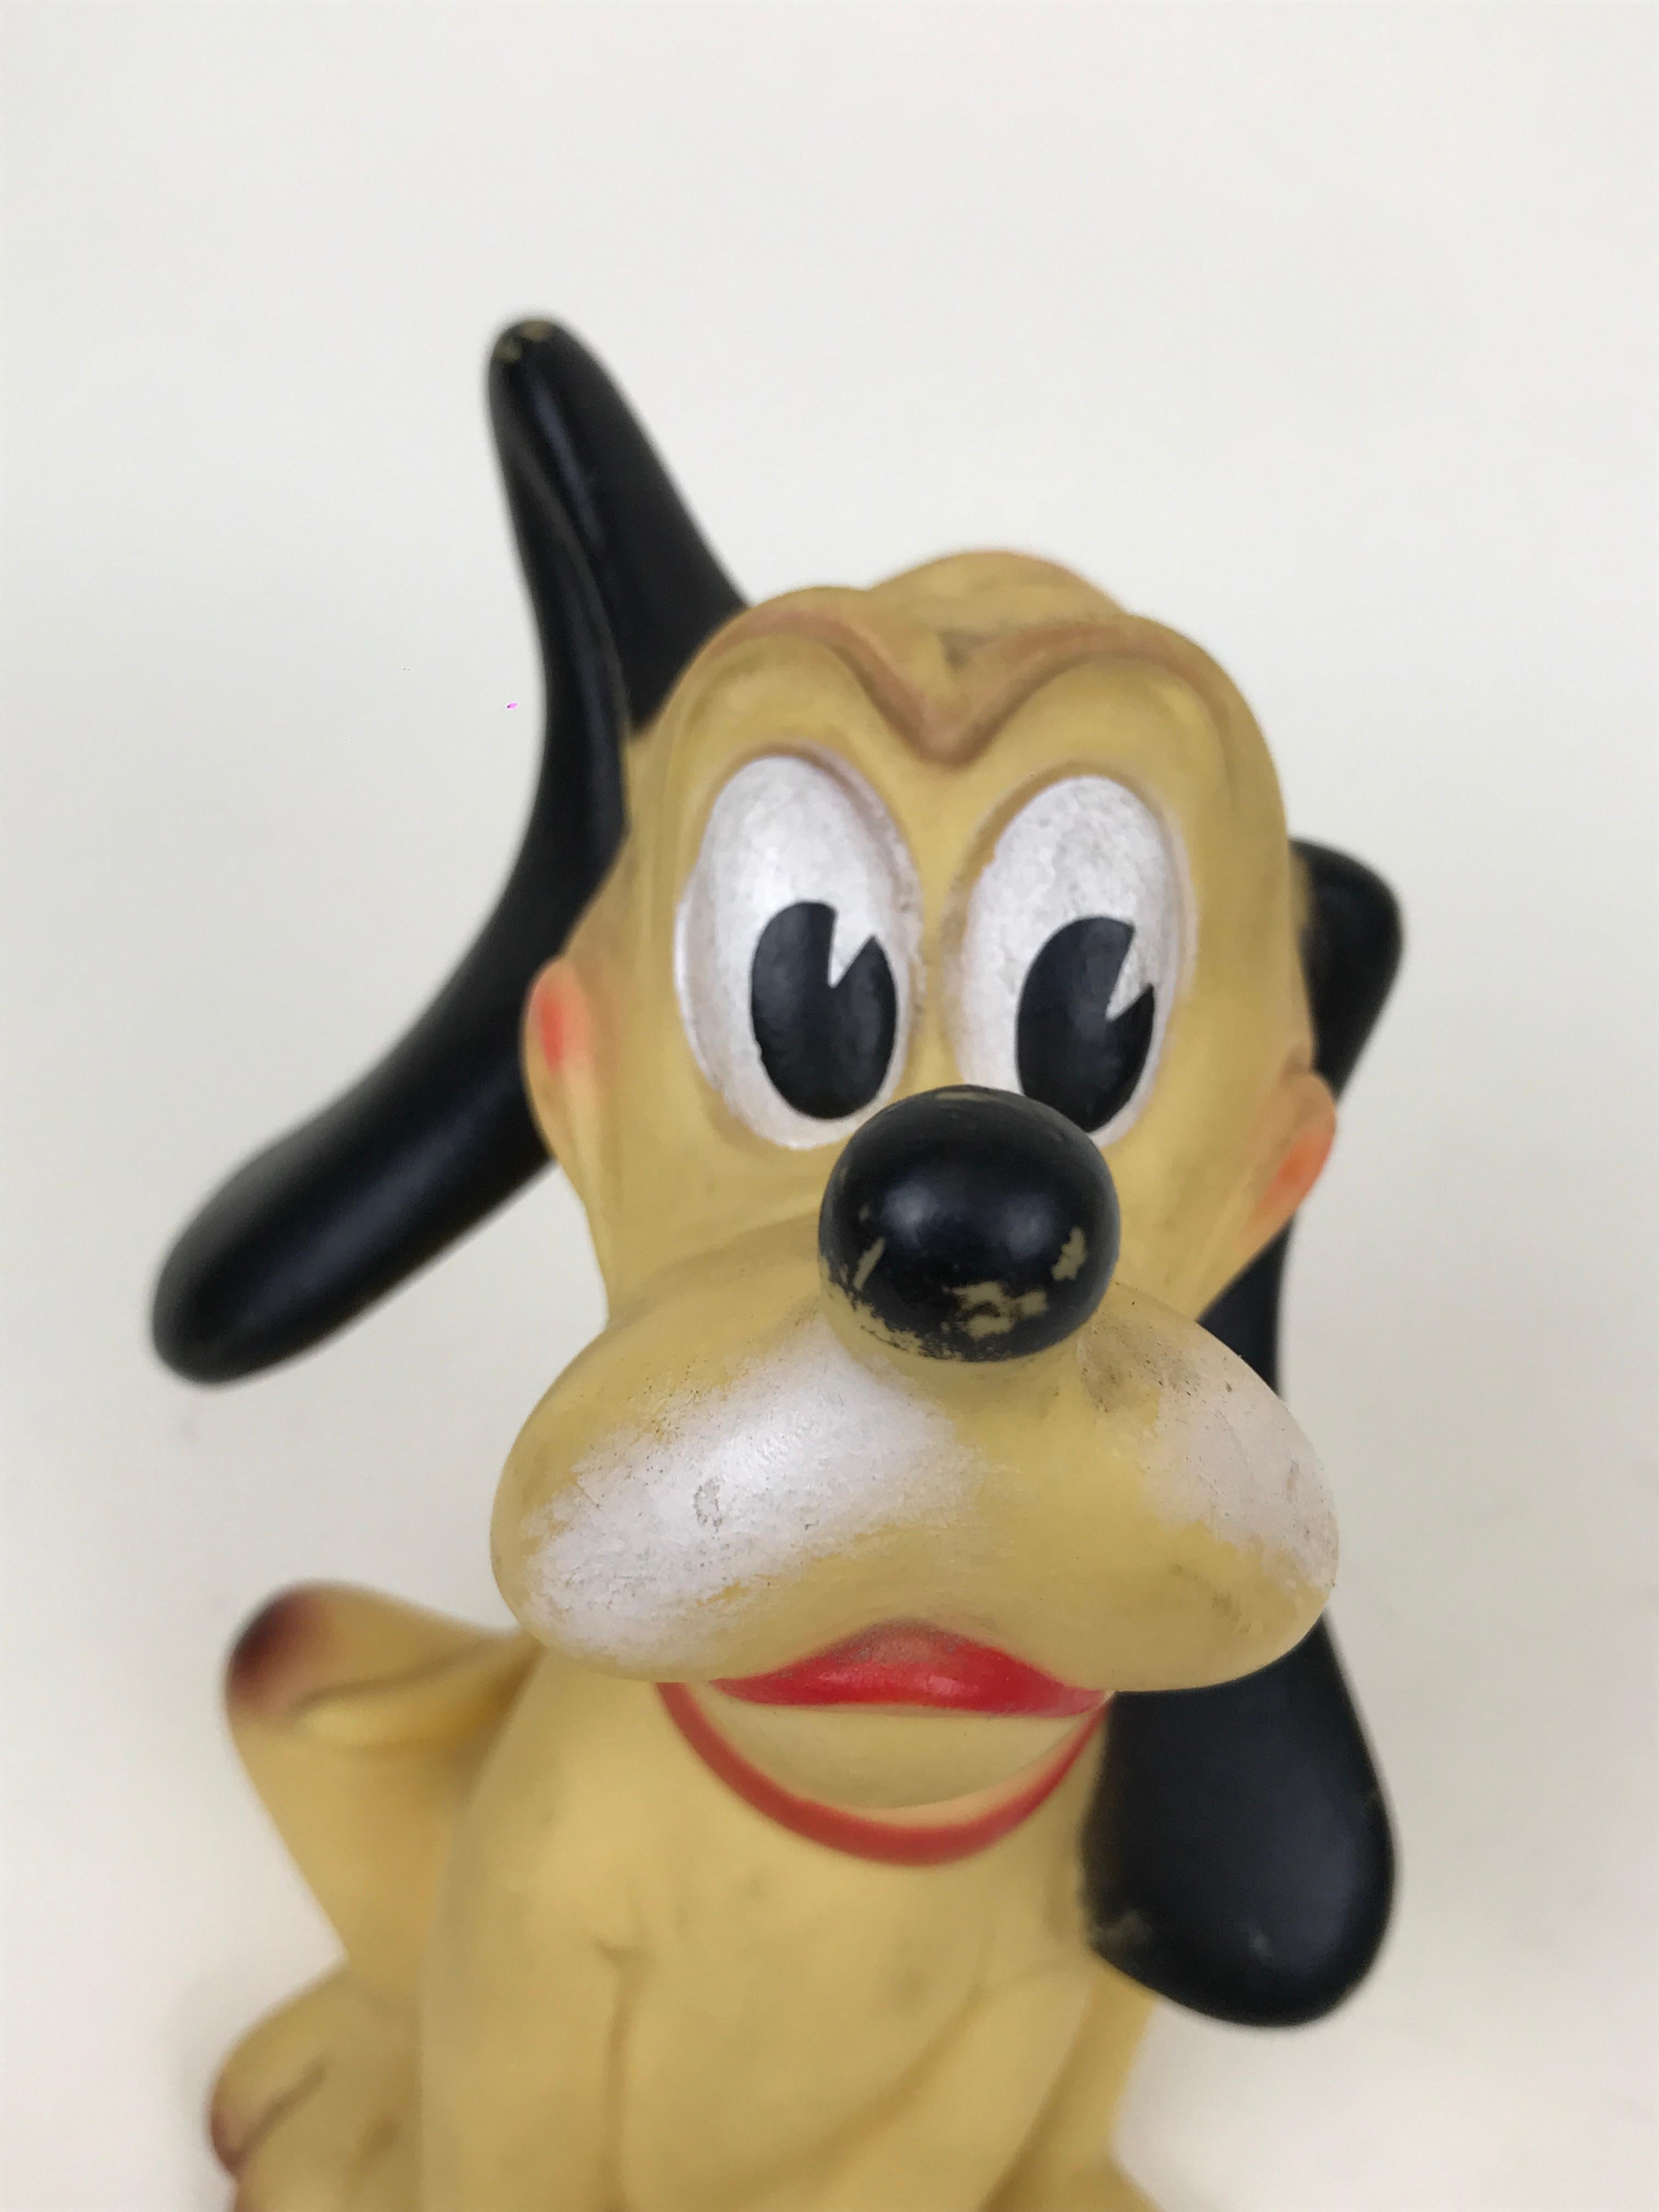 Mid-20th Century 1960s Vintage Original Disney Pluto Rubber Squeak Toy Made in Italy Ledraplastic